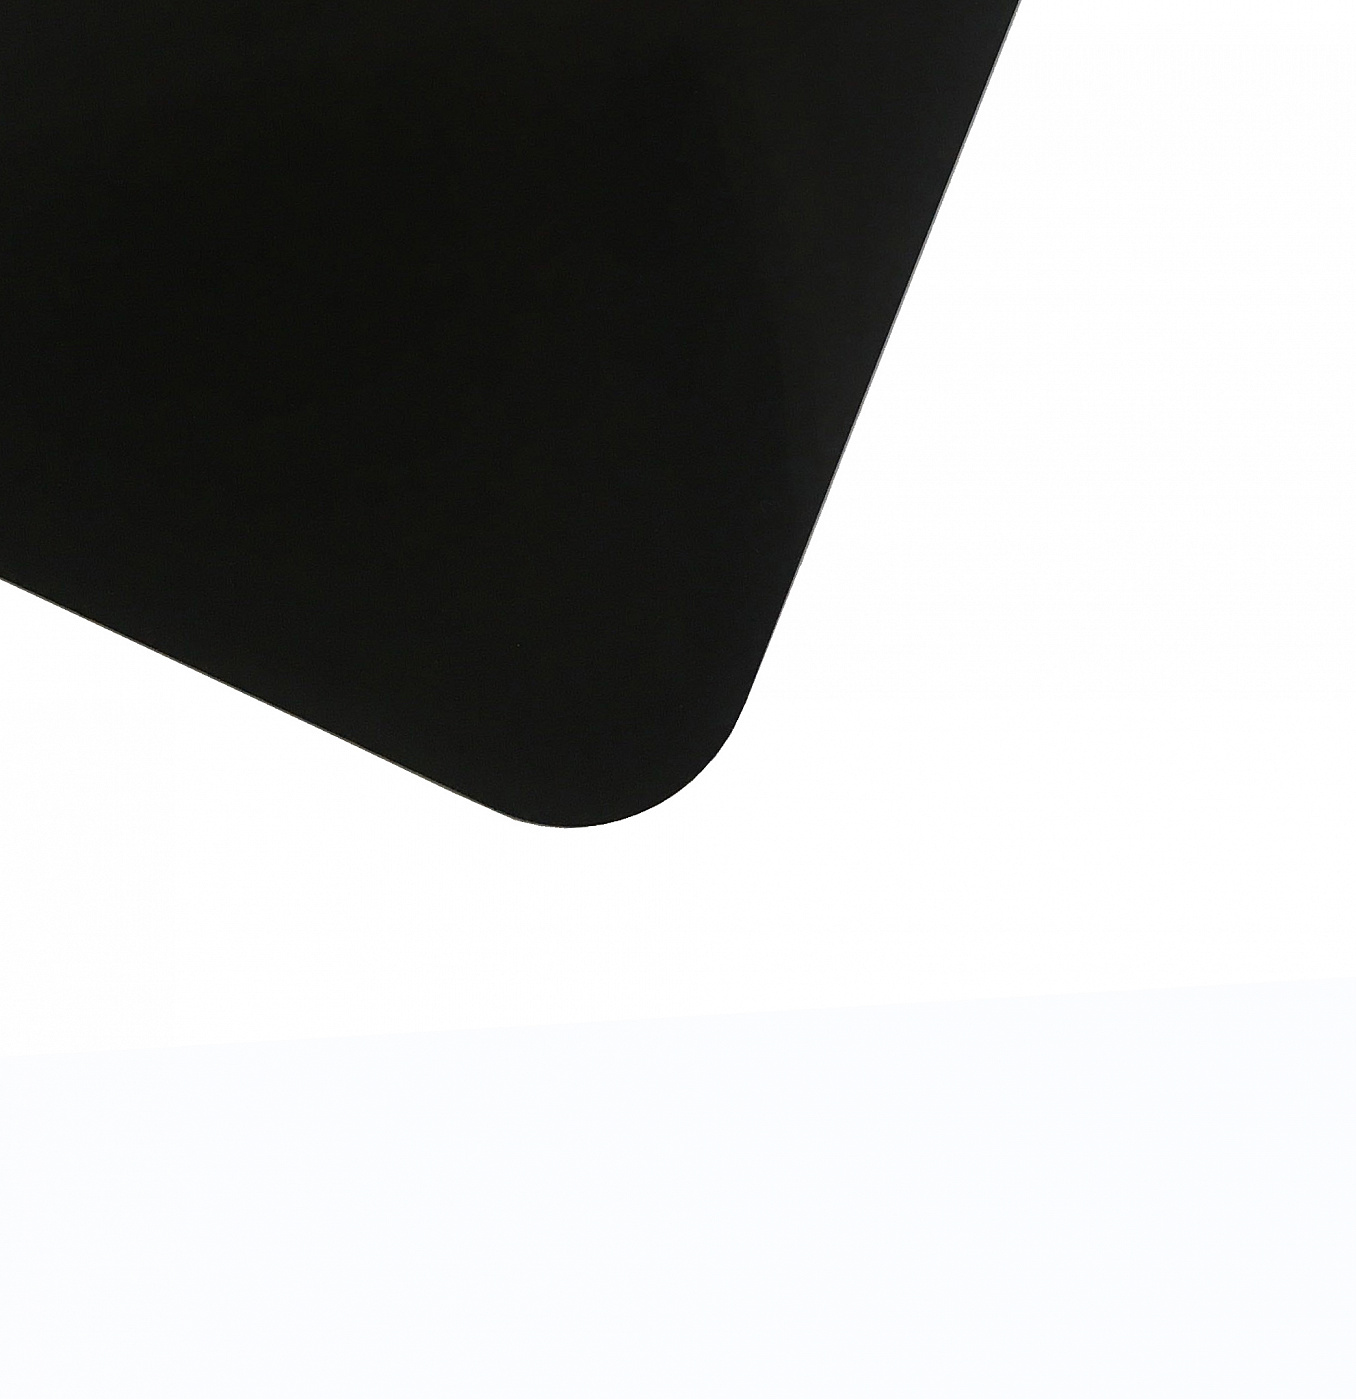 Планшет для пленэра из оргстекла 3 мм, под лист размера 21х30 см, цвет черный Dec-9082041 - фото 1